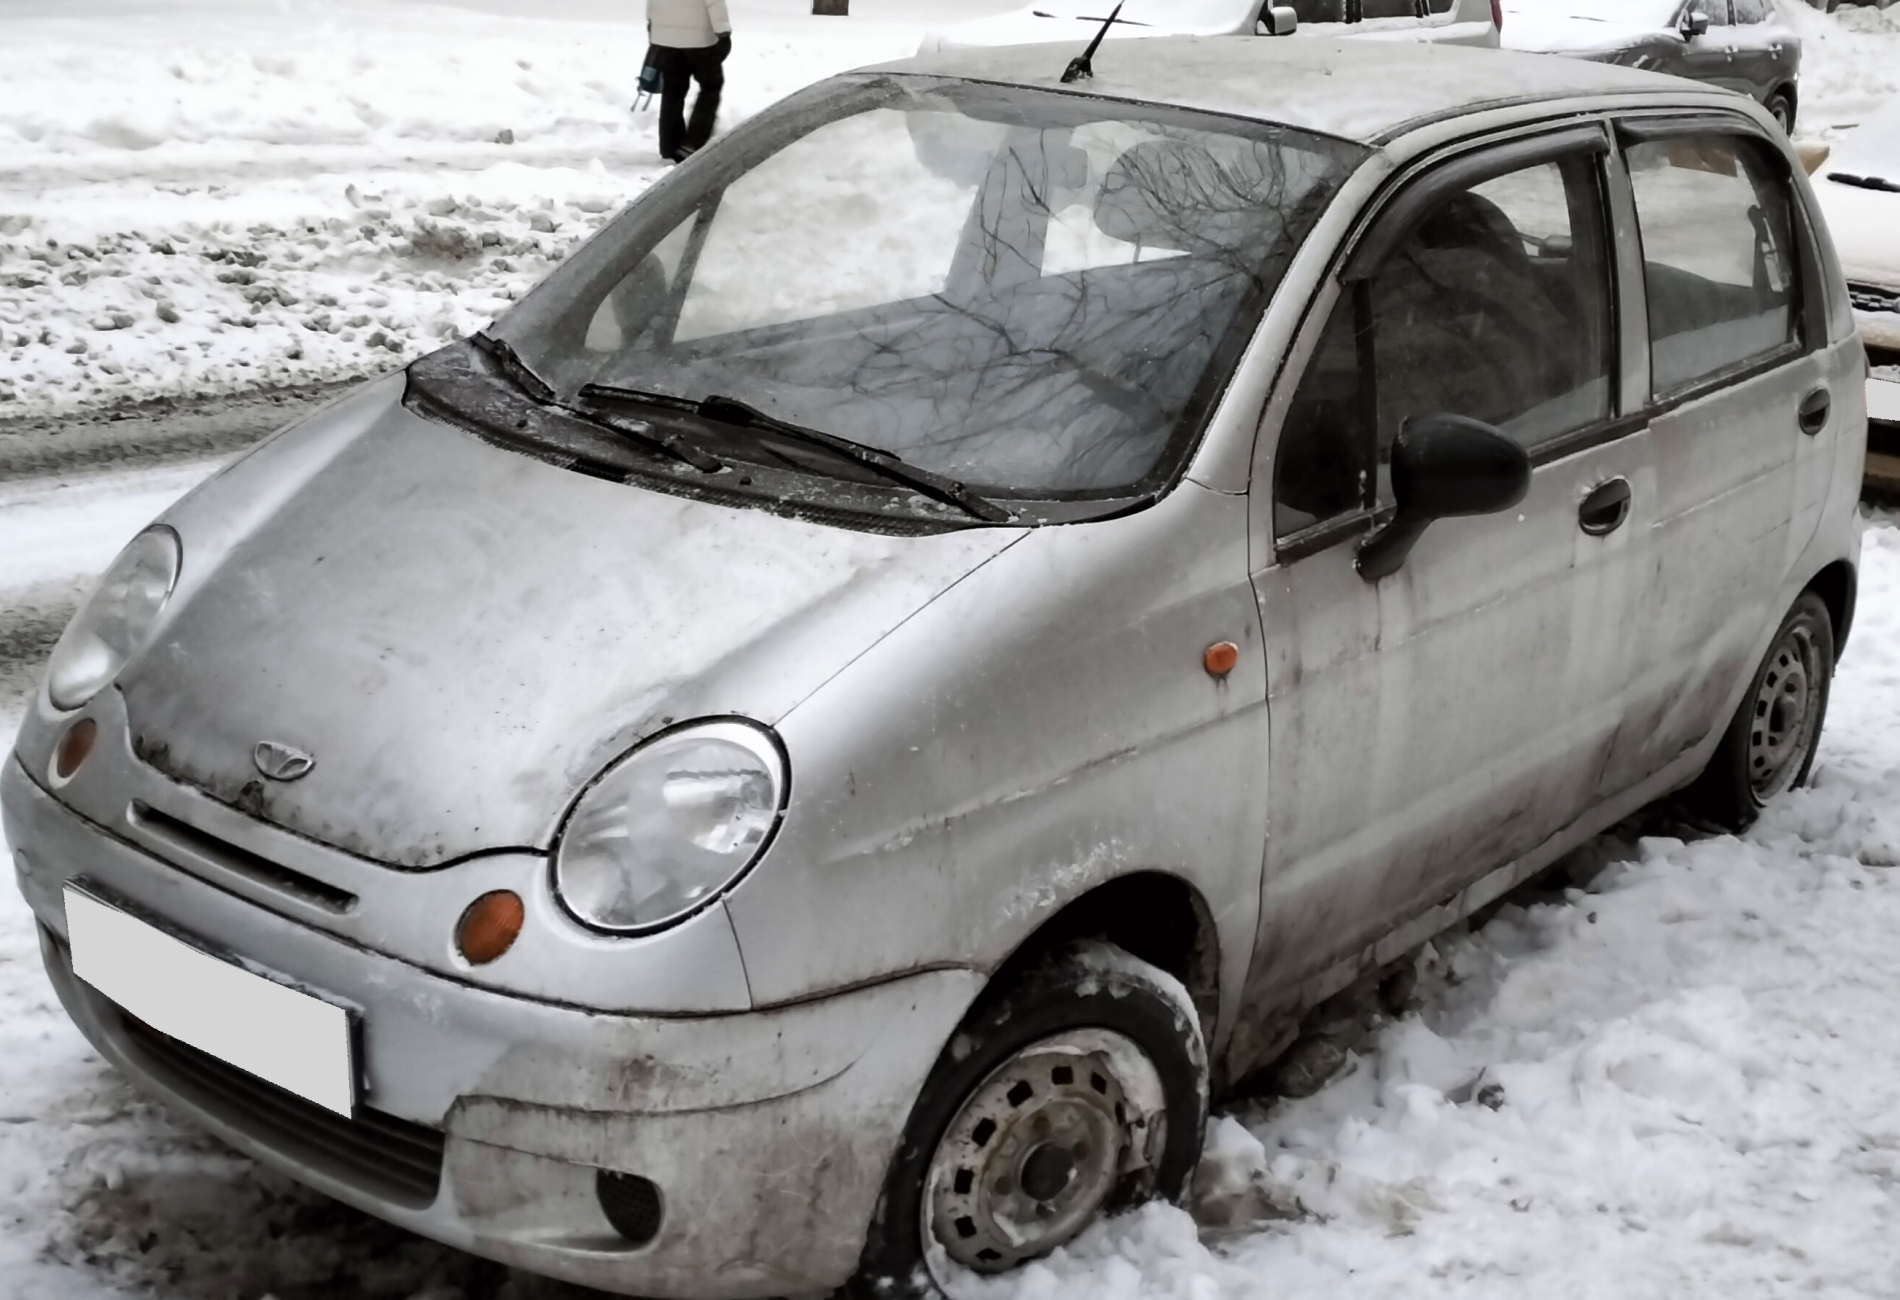 Аренда daewoo matiz эконом класса 2010 года в городе Москва Таганская от 900 руб./сутки, передний привод, двигатель: бензин, объем 0.8 литров, ОСАГО (Впишу в полис), без водителя, недорого - RentRide